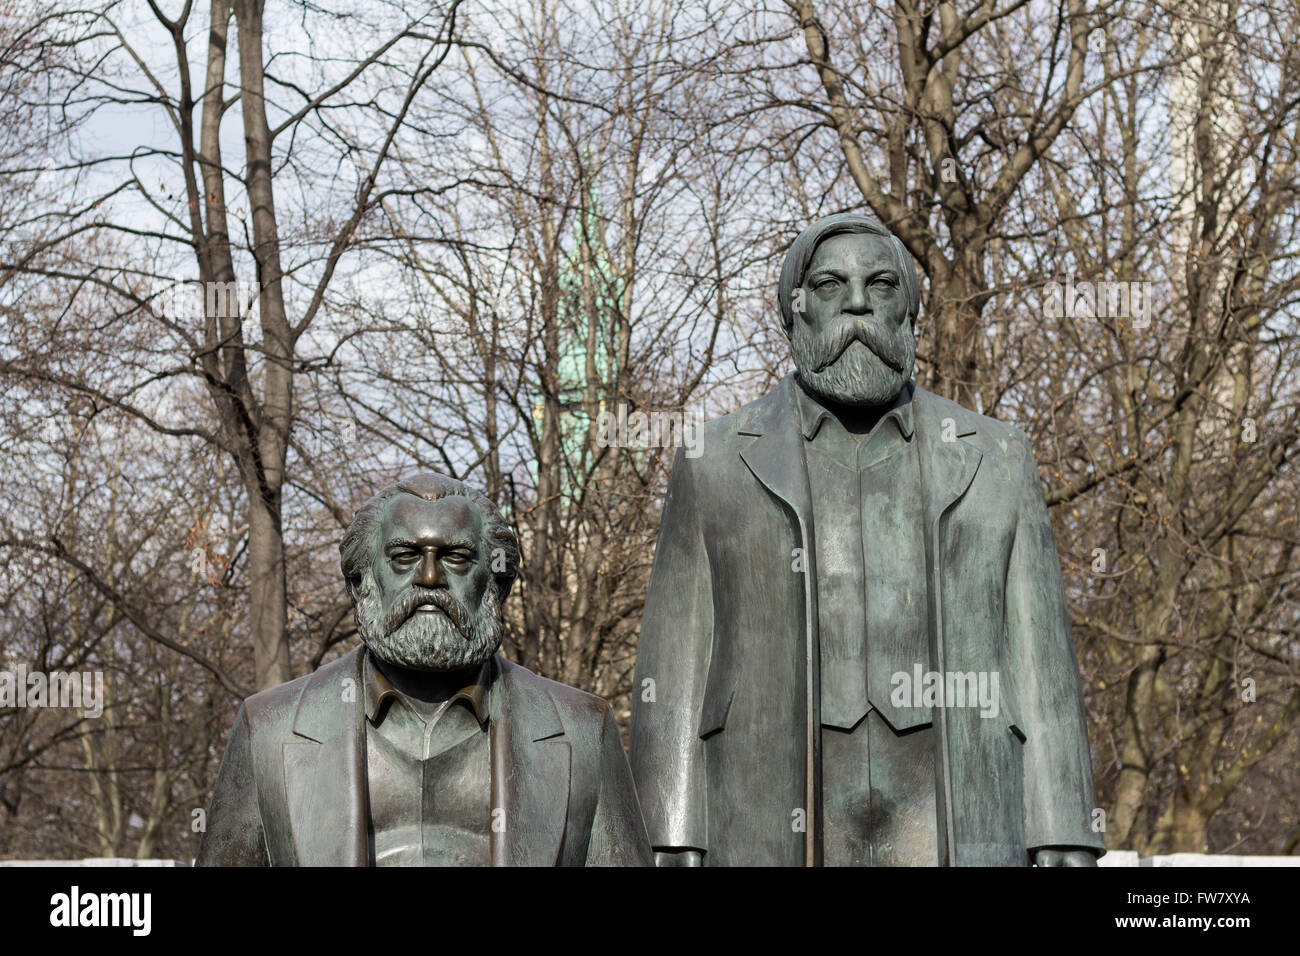 Berlin, Allemagne - 30 mars 2016 : statue de Karl Marx et Friedrich Engels près de l'Alexanderplatz à Berlin, Allemagne. Banque D'Images